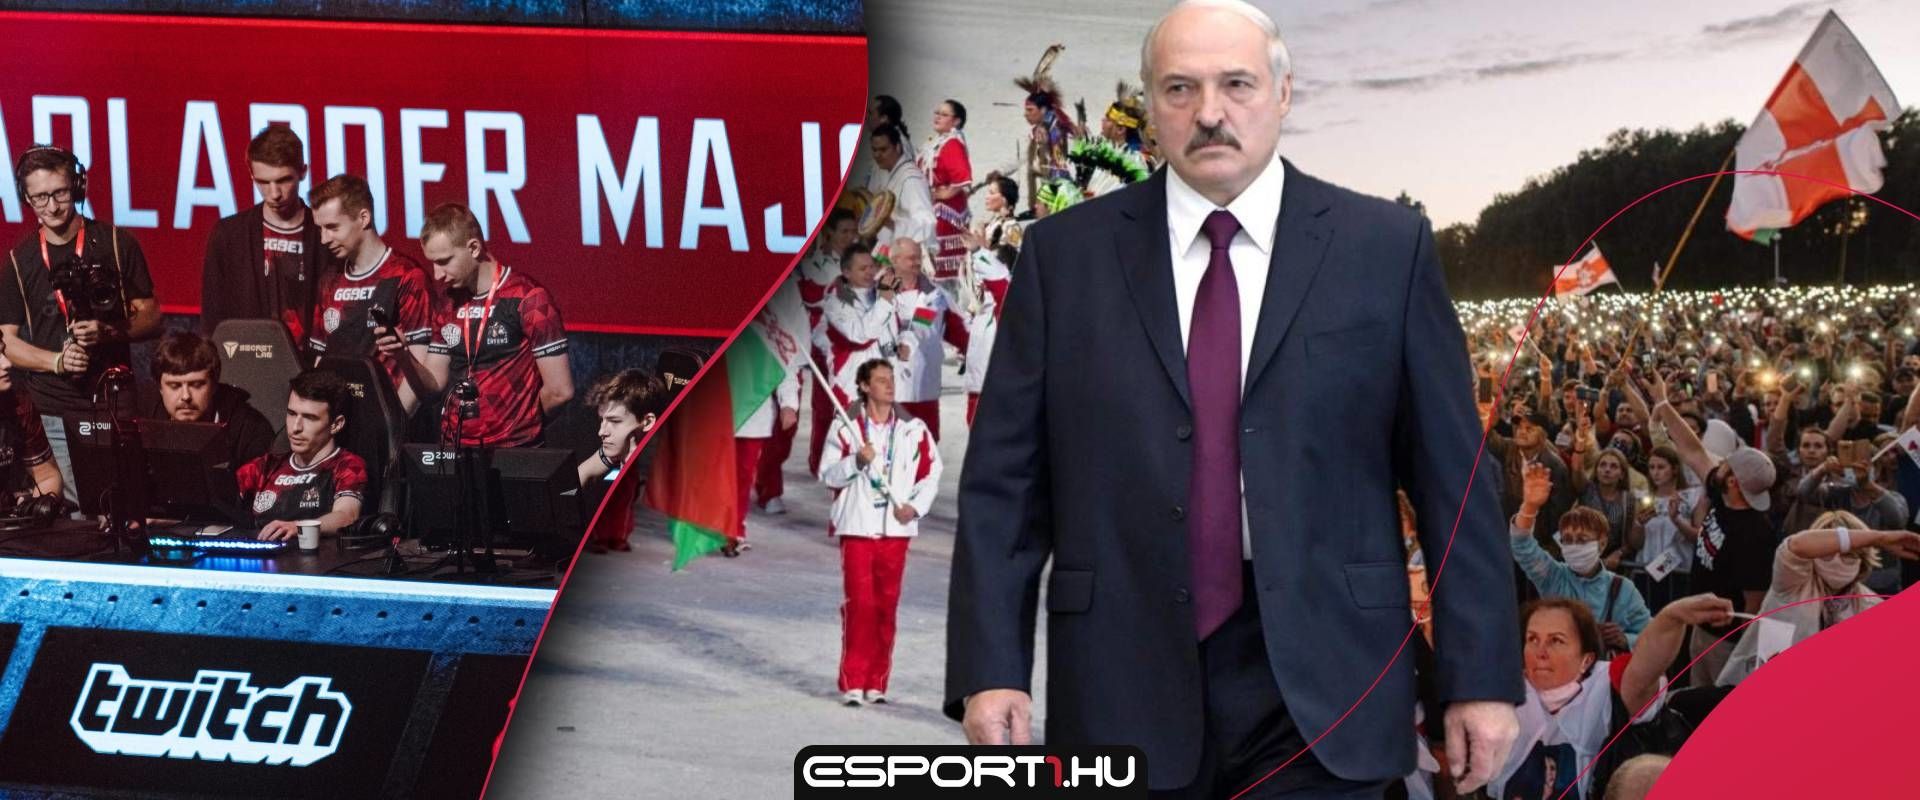 Elmaradt a meccs a fehérorosz tüntetések miatt